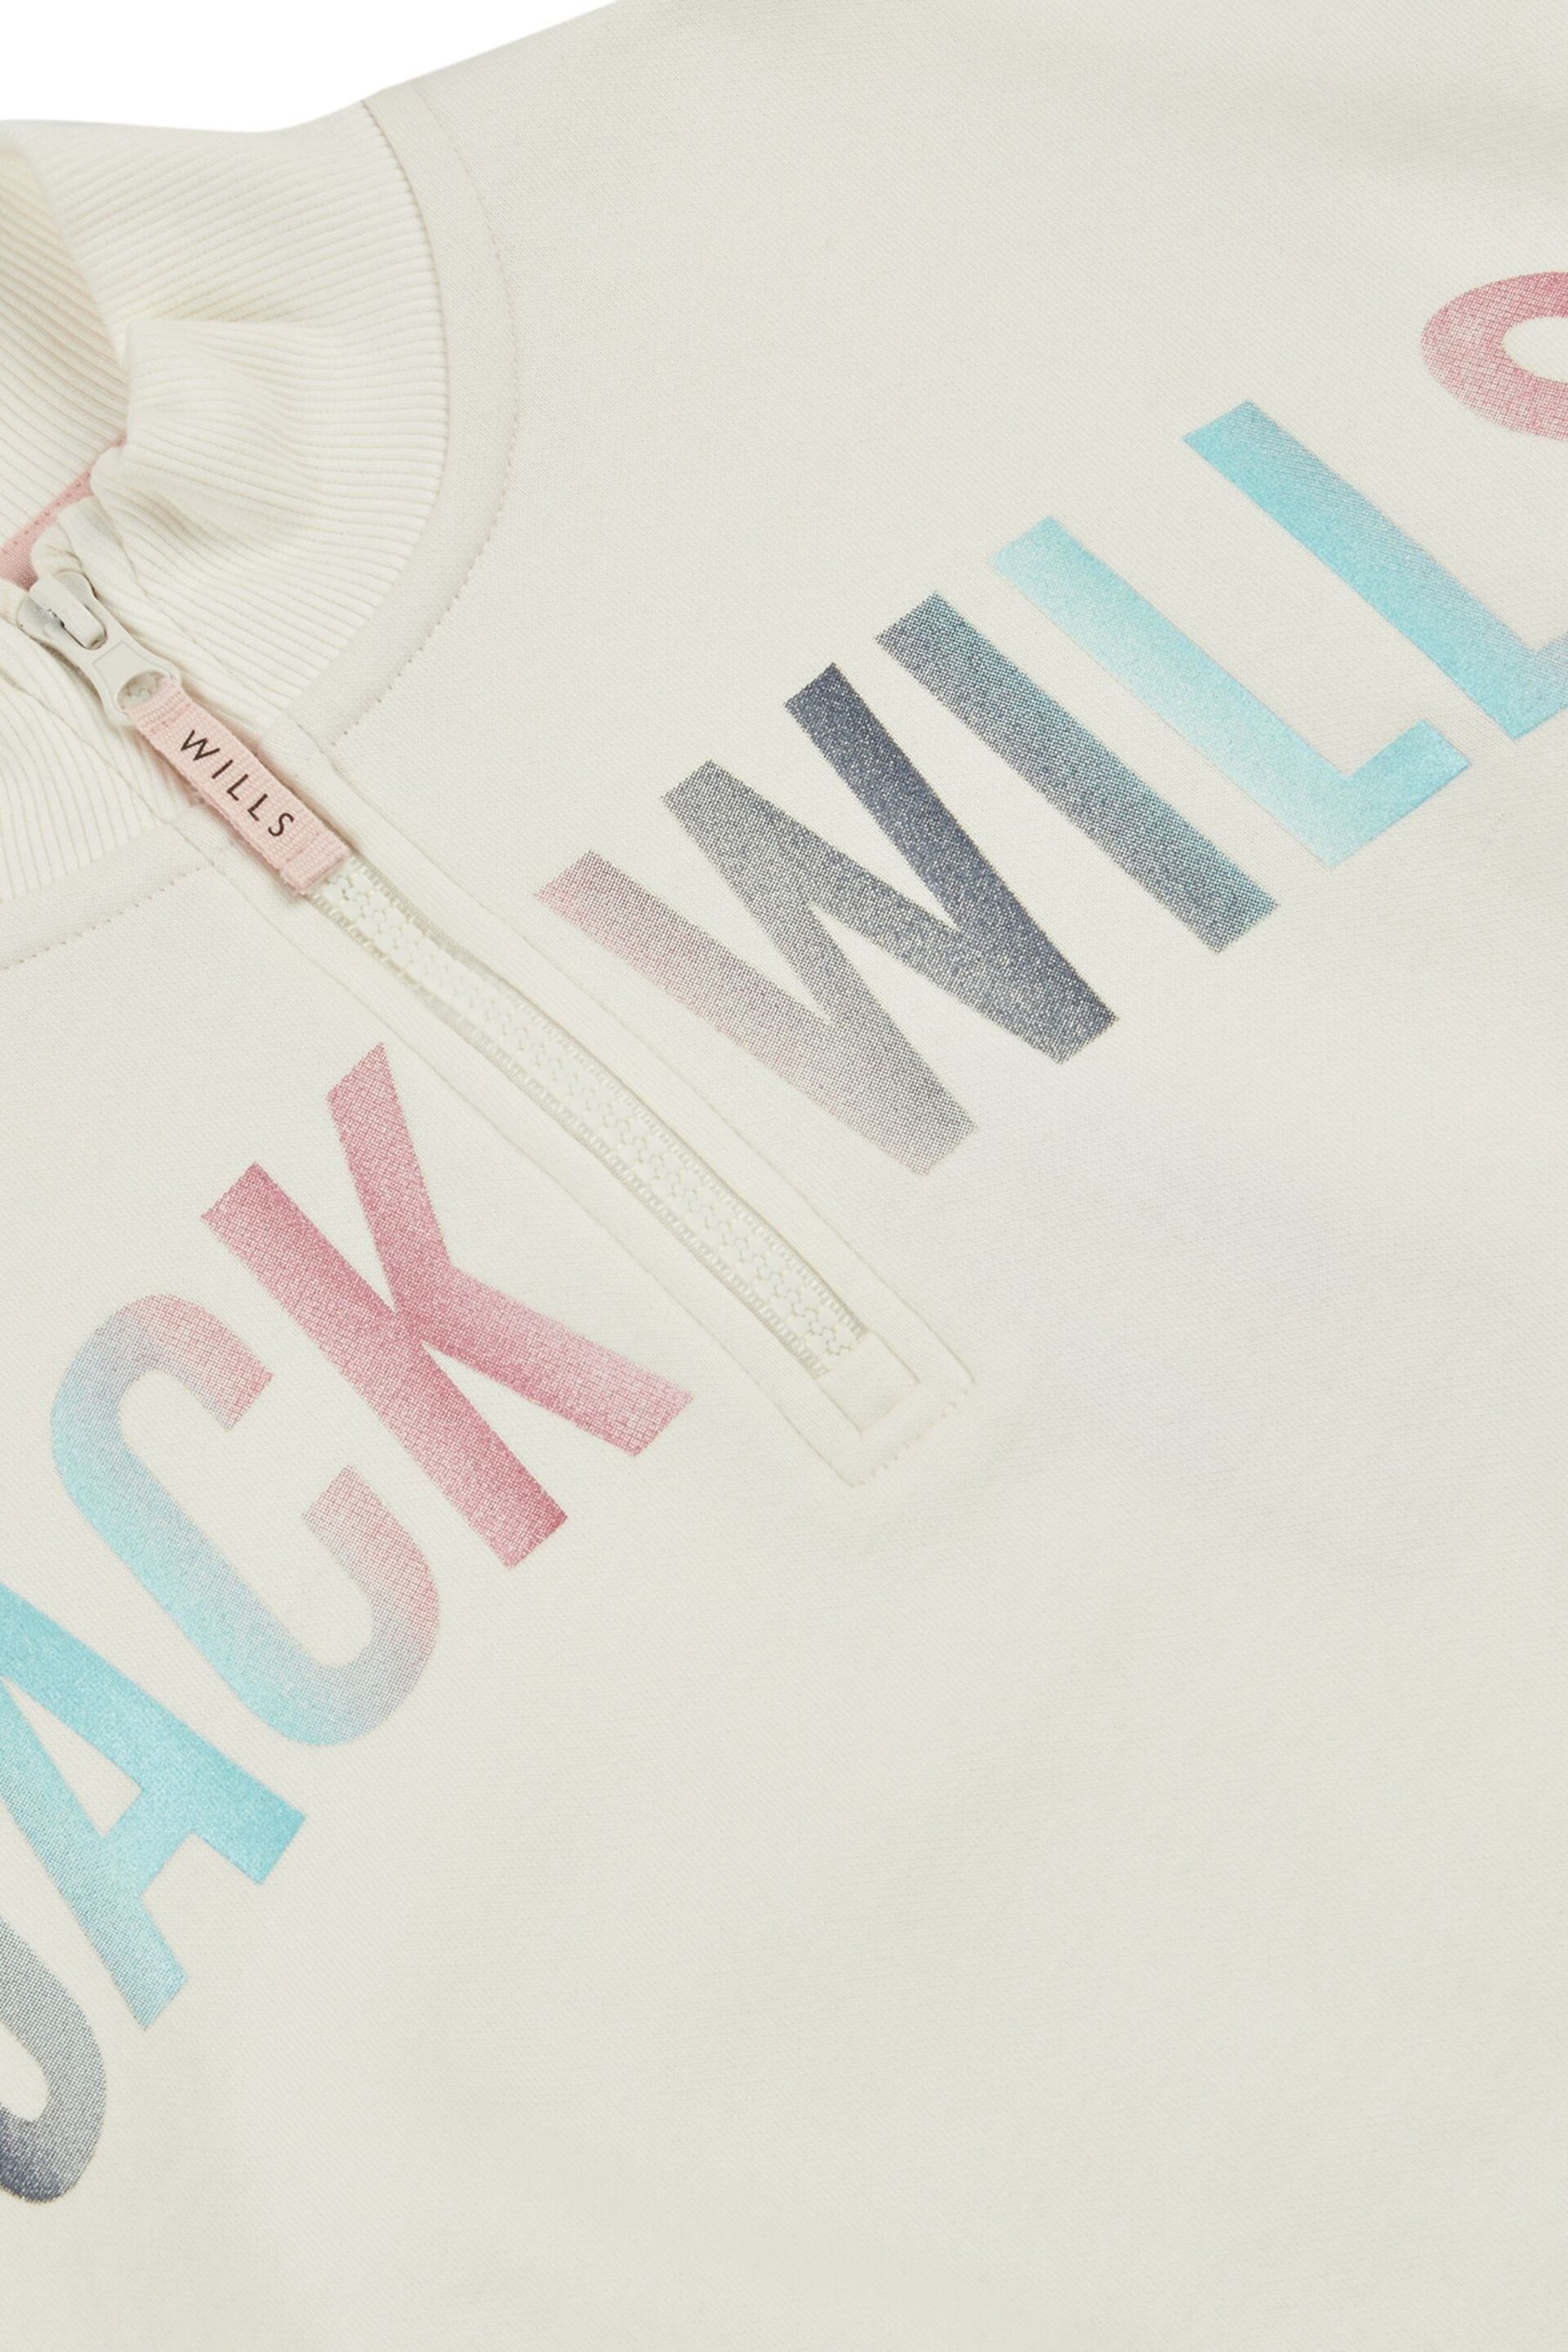 Jack Wills Cream Foil Print 1/4 Zip Sweatshirt - Image 6 of 6